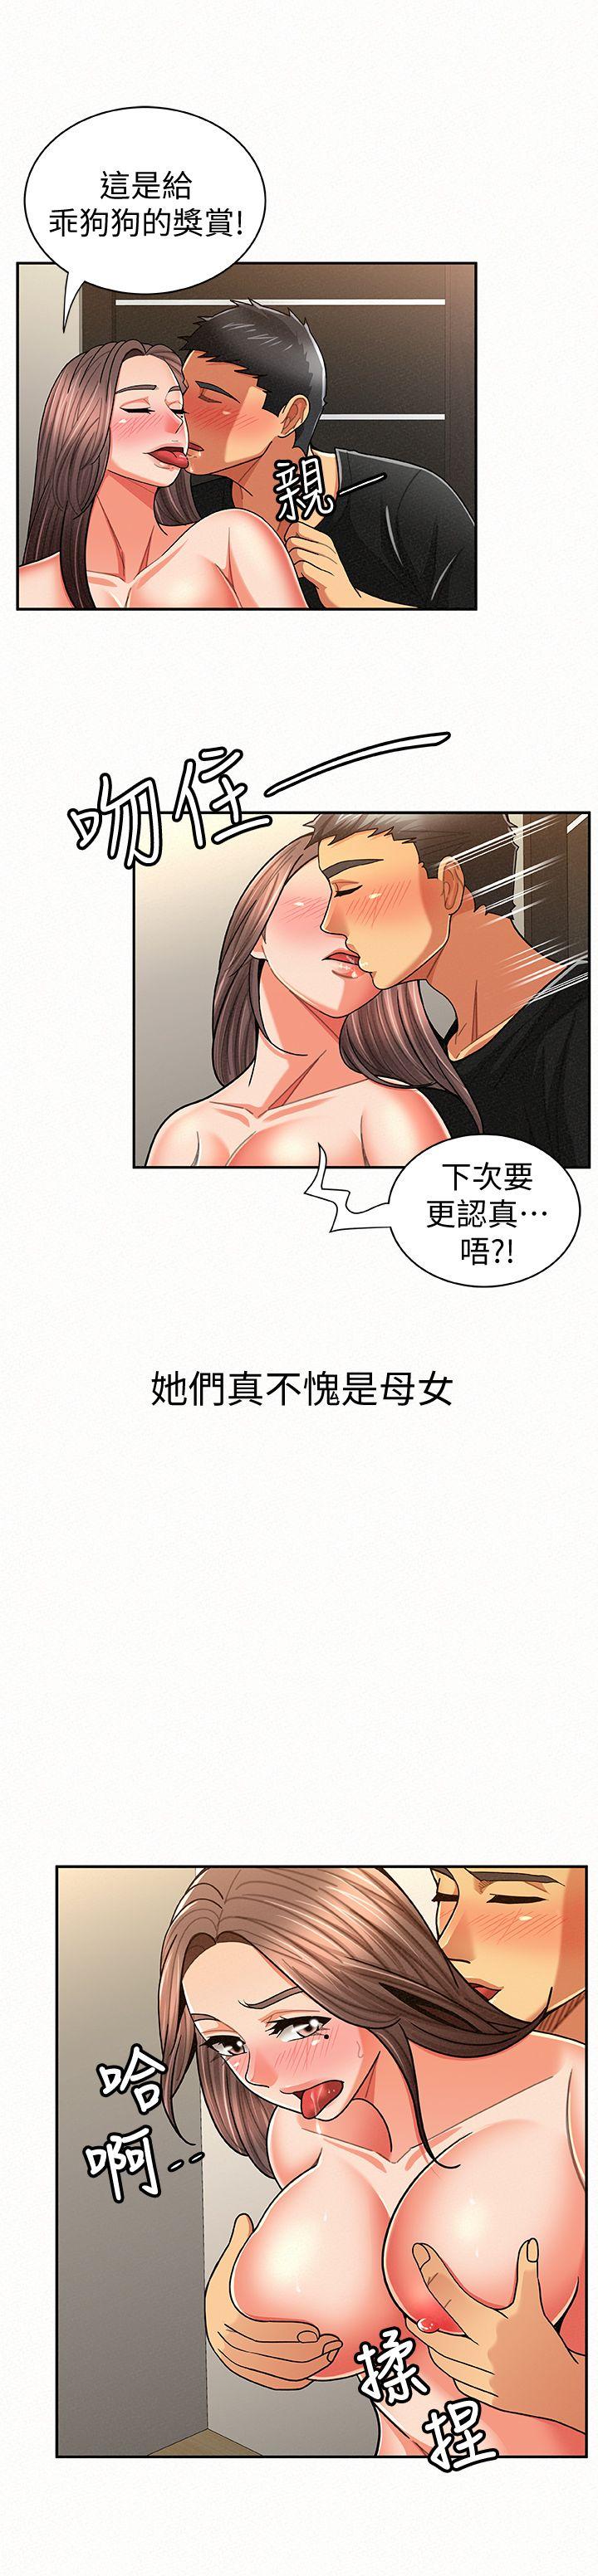 韩国污漫画 報告夫人 第21话-无法停止的关系 24